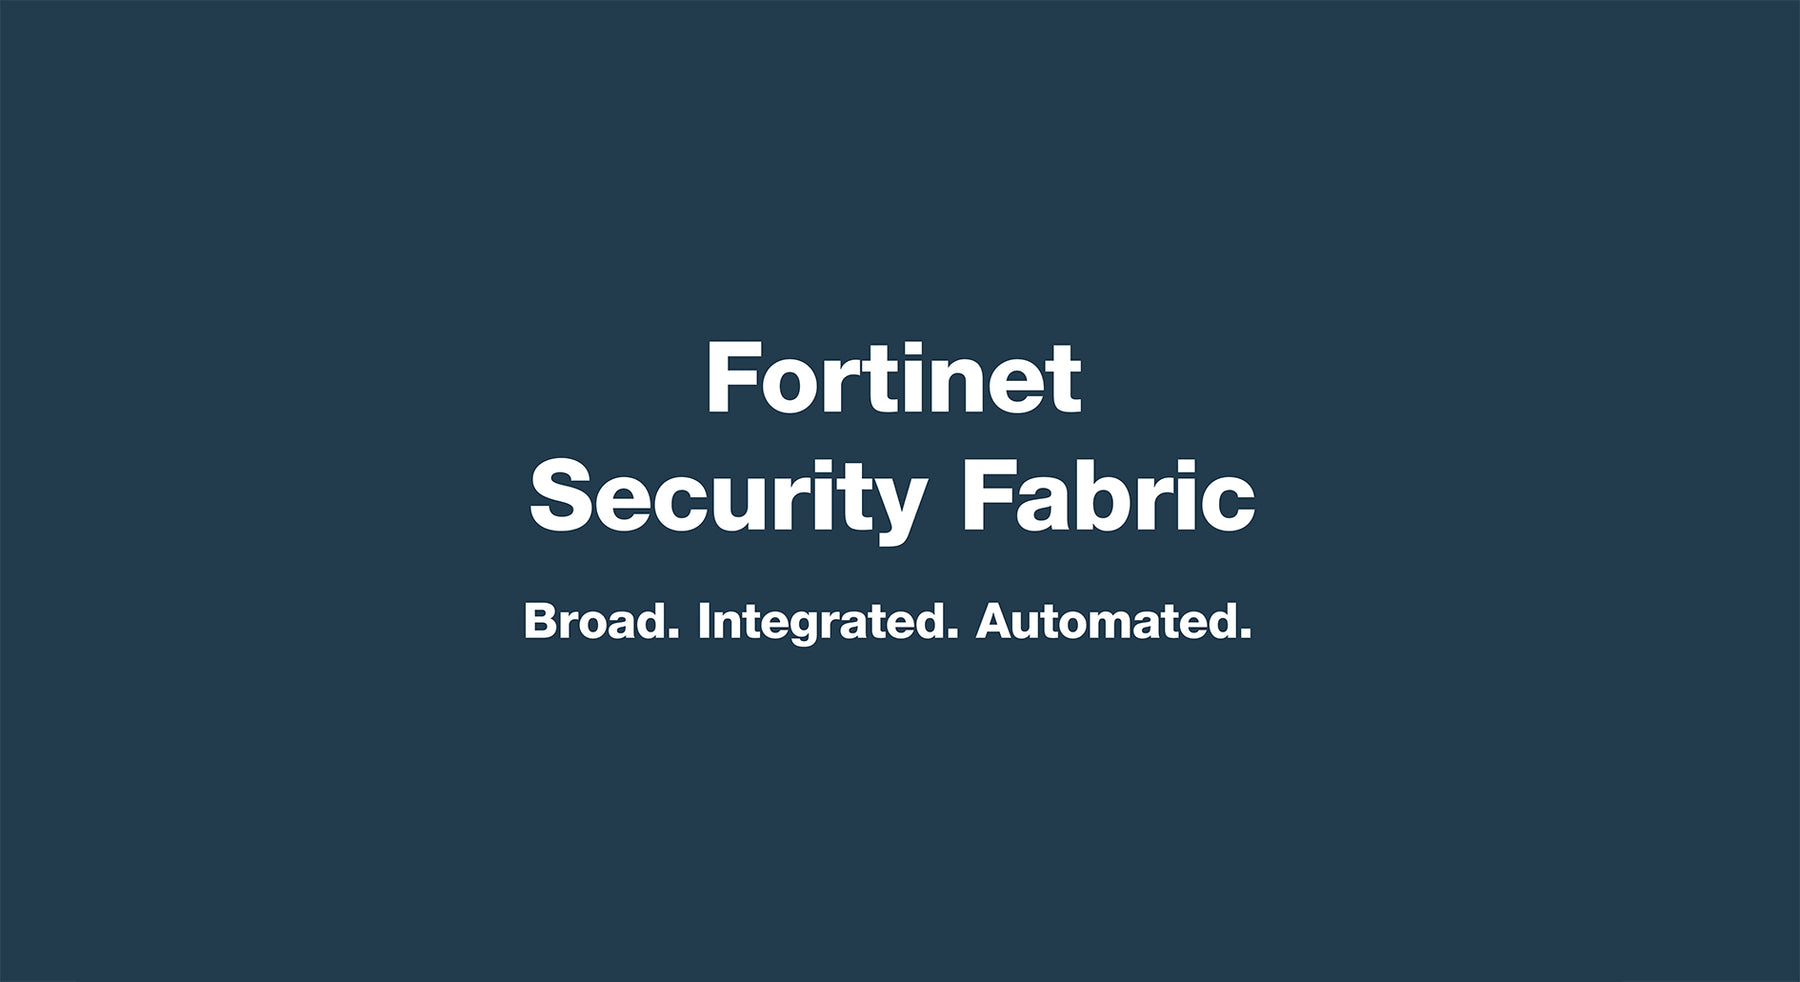 Welke producten zijn onderdeel van de Fortinet Security Fabric?